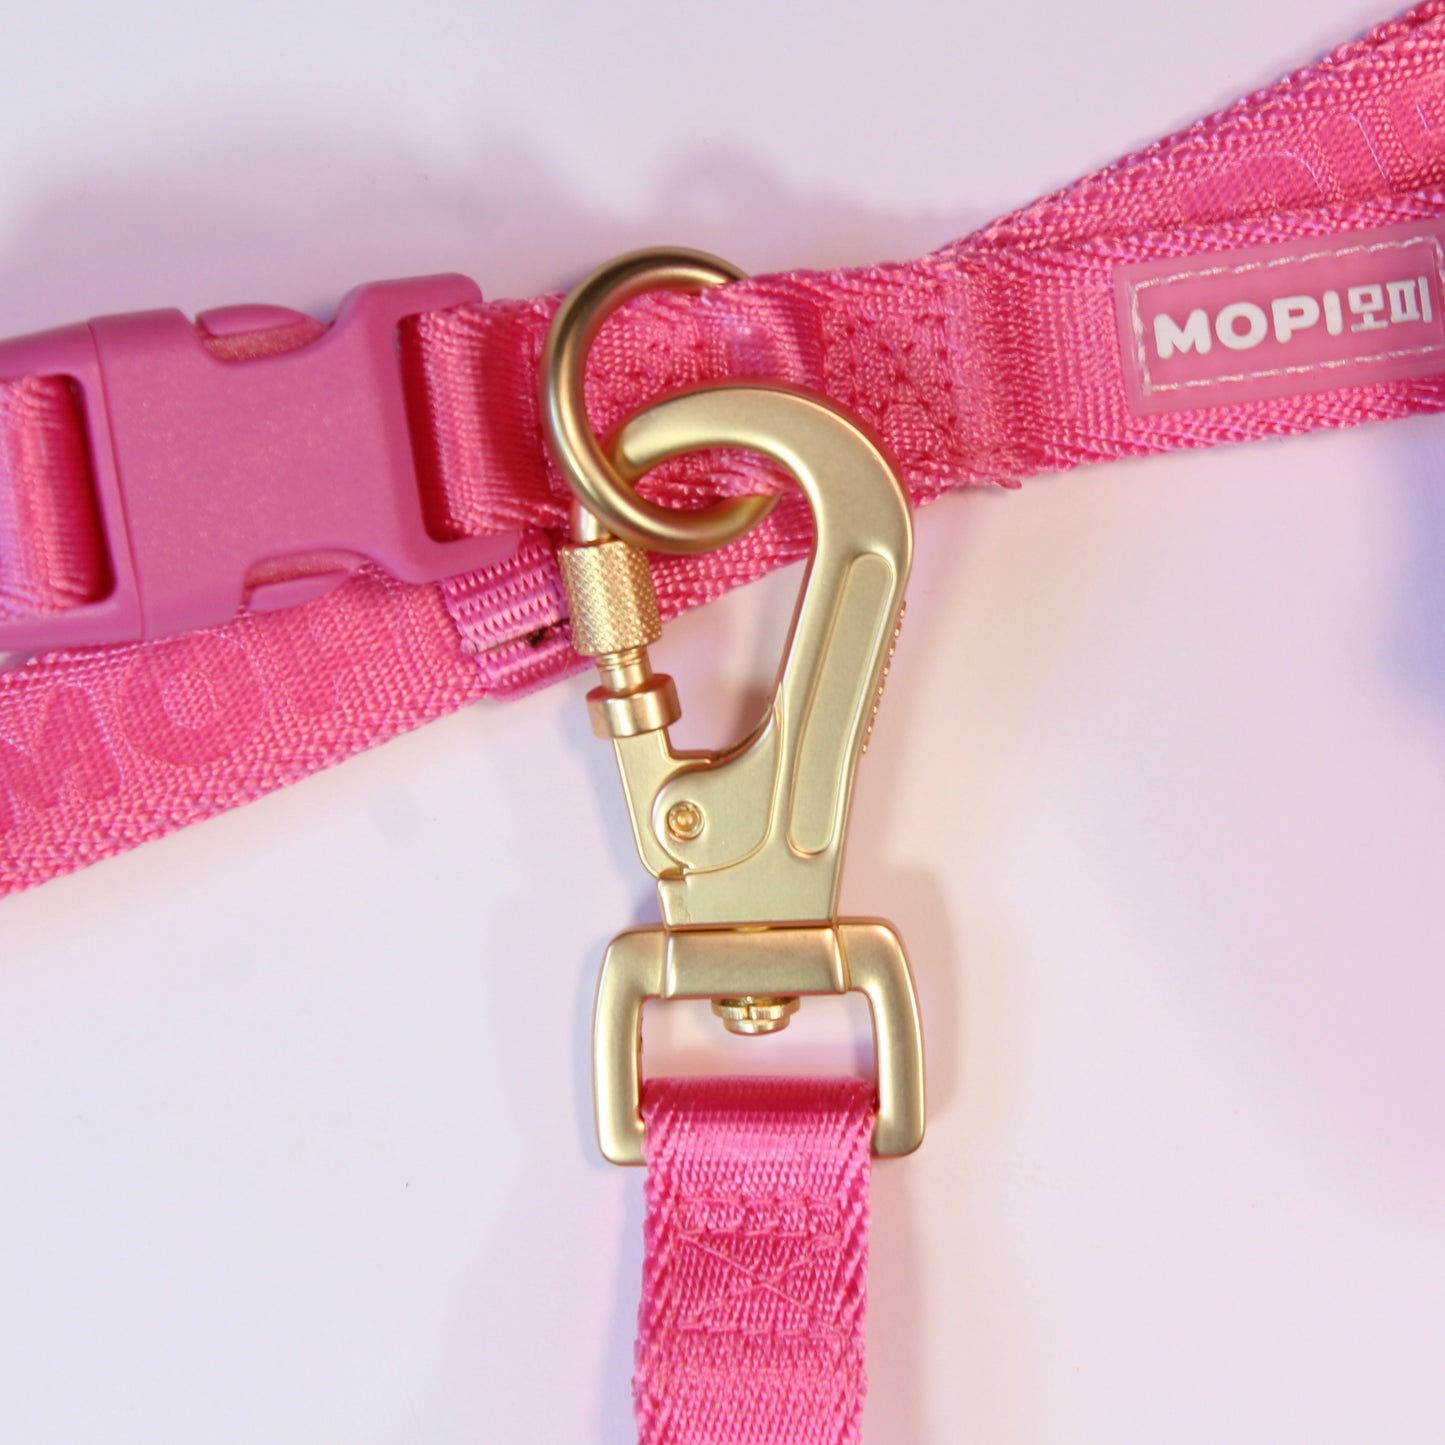 NEW Set Arnés+ correa + cinturón con mopibag  hot pink